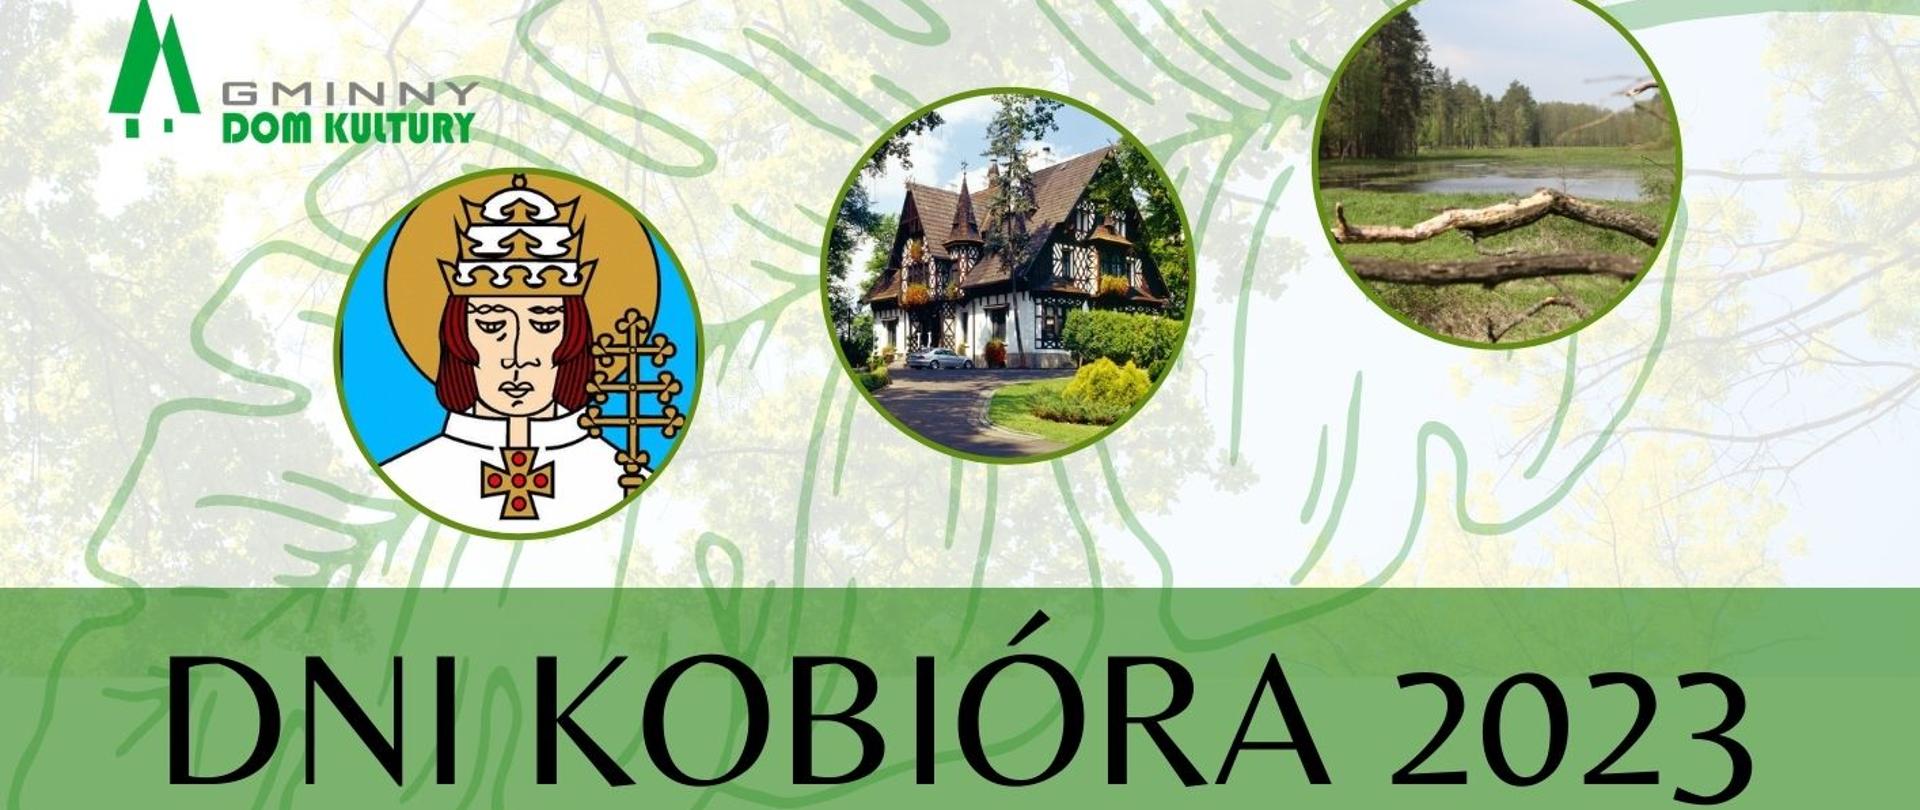 Na górze logo GDK Kobiór, trzy obrazki w okrągłych ramkach - św. Urban, zamek w Promnicach, zalewy. Poniżej na zielonym tle czarny napis dni Kobióra 2023. Poniżej plan obchodów dni Kobióra.